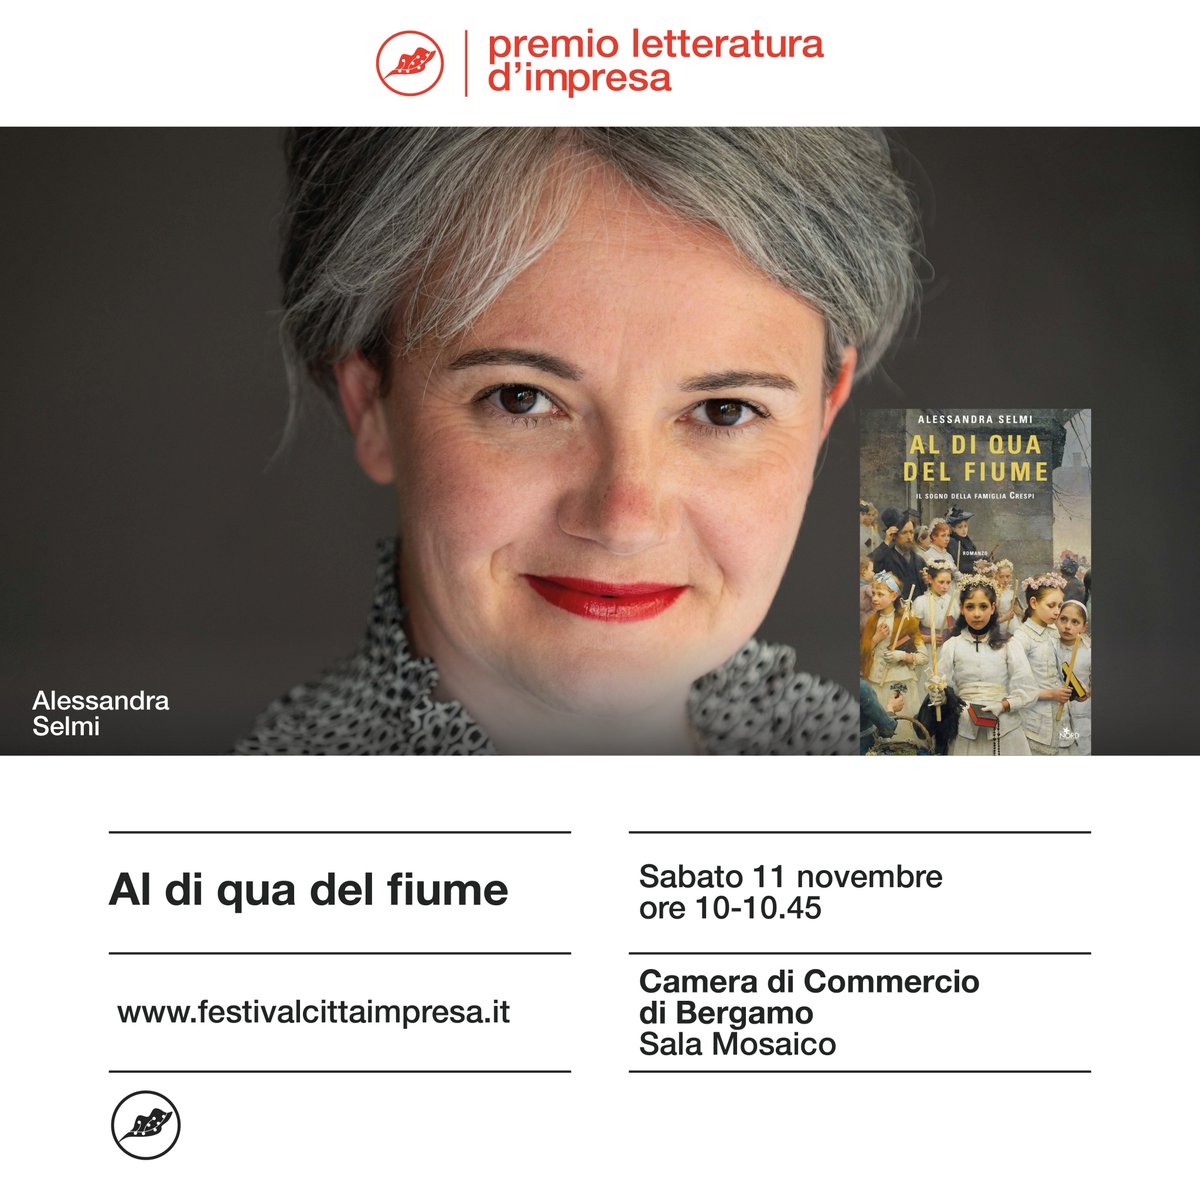 Sabato 11 novembre Alessandra Selmi presenterà in occasione di Bergamo #CittaImpresa il suo libro “AL DI QUA DEL FIUME”, finalista del Premio #LetteraturadImpresa.

👉 Iscriviti qui : festivalcittaimpresa.it/tc-events/al-d…